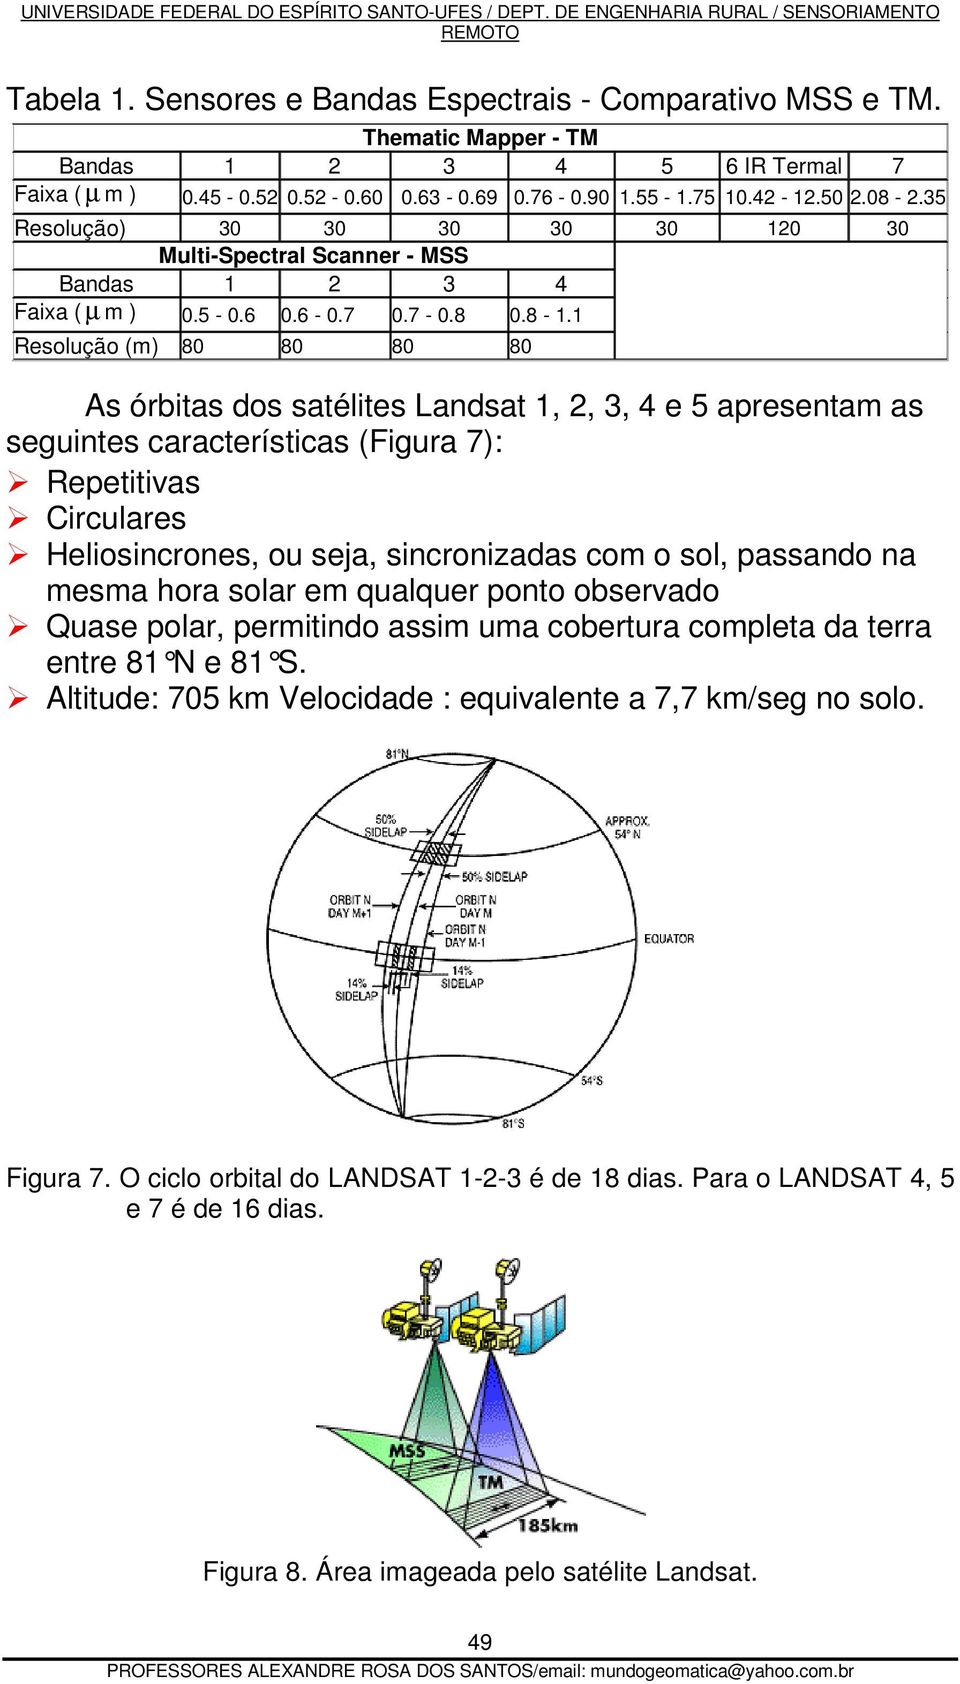 1 Resolução (m) 80 80 80 80 As órbitas dos satélites Landsat 1, 2, 3, 4 e 5 apresentam as seguintes características (Figura 7): Repetitivas Circulares Heliosincrones, ou seja, sincronizadas com o